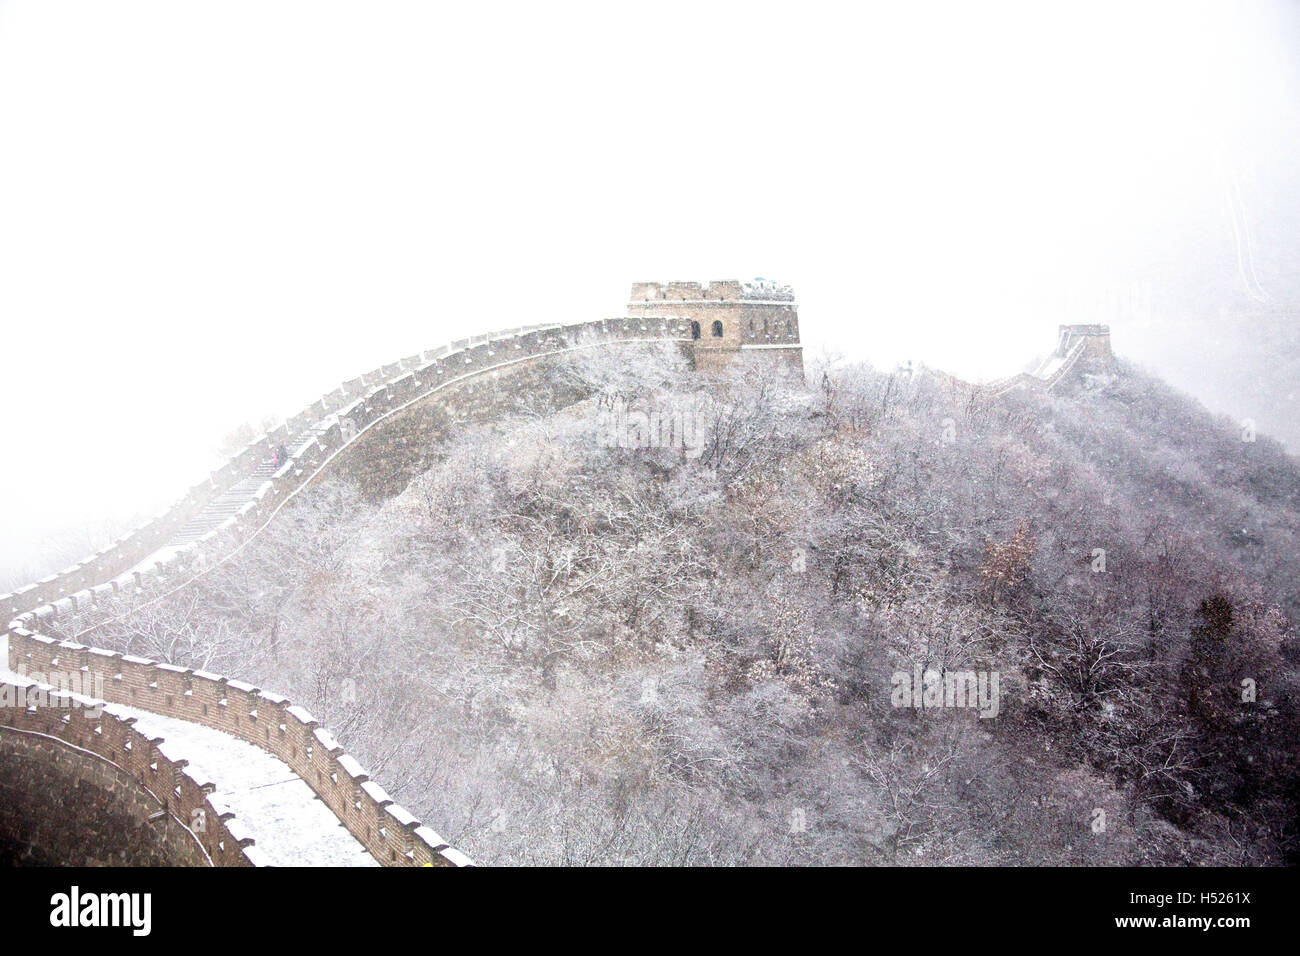 Une partie de la section de Mutianyu de la Grande muraille de Chine sous la neige en hiver à Mutianyu près de Beijing Chine Banque D'Images